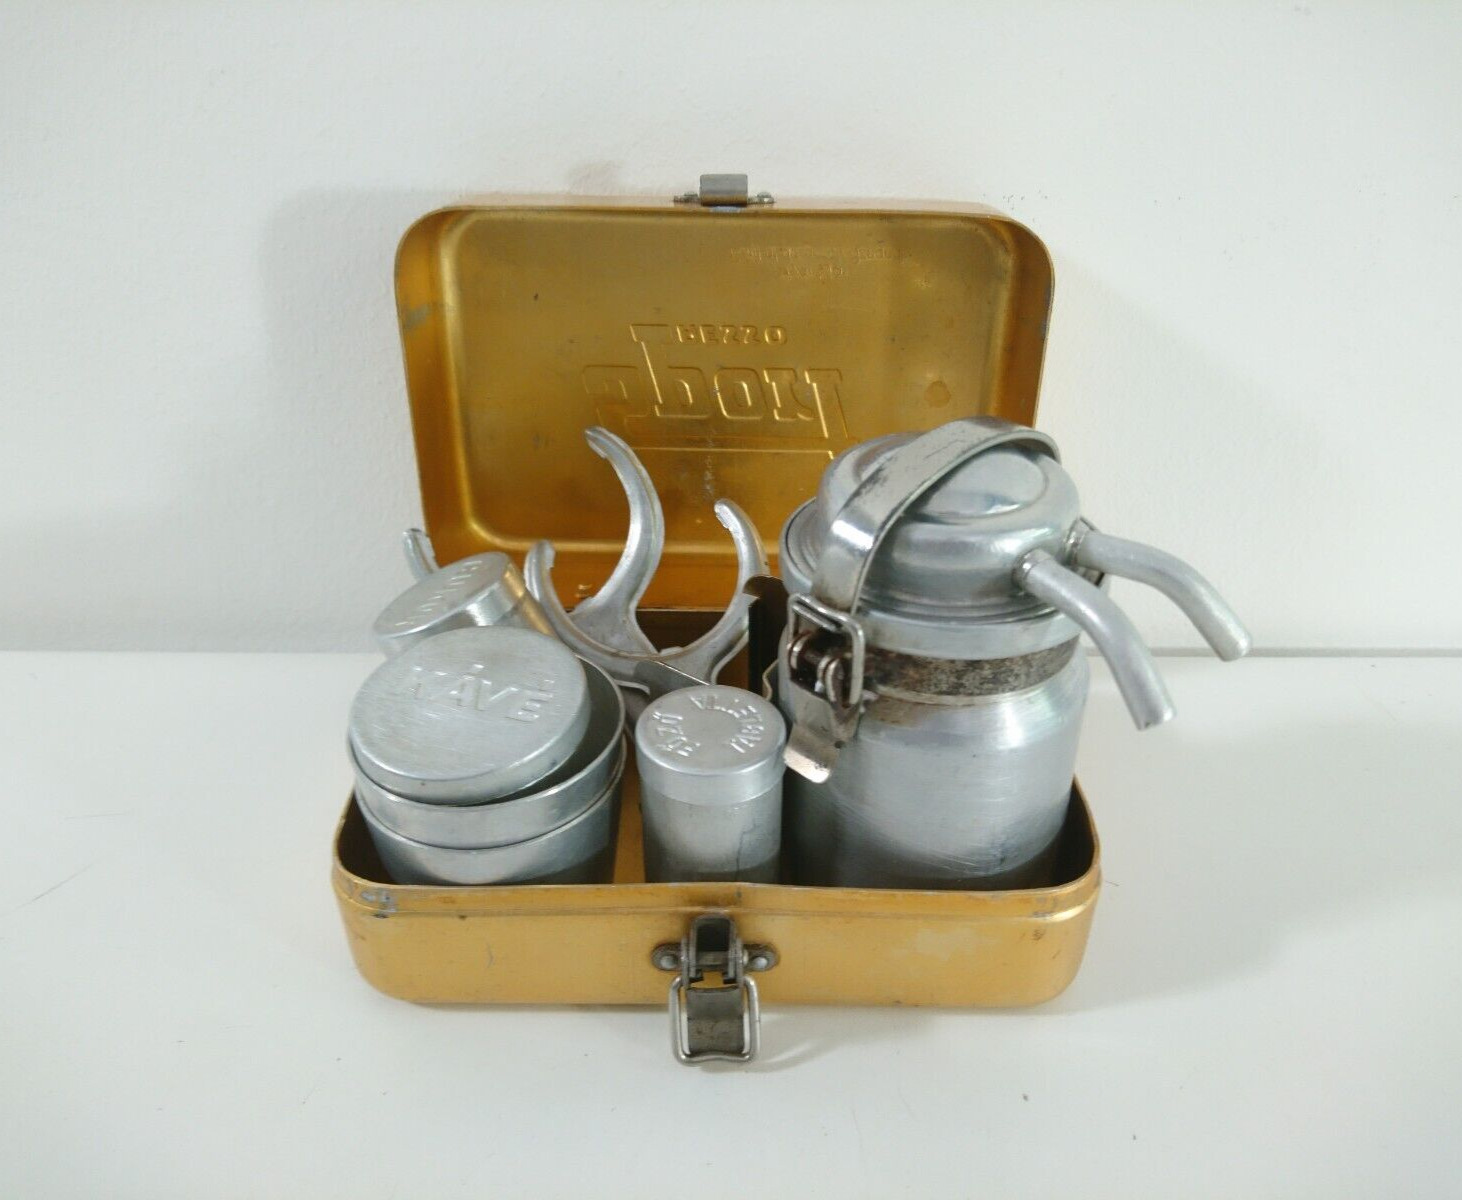 Vintage Mini Espresso Coffee Maker Set for Camping SPORT PRESSO Complete